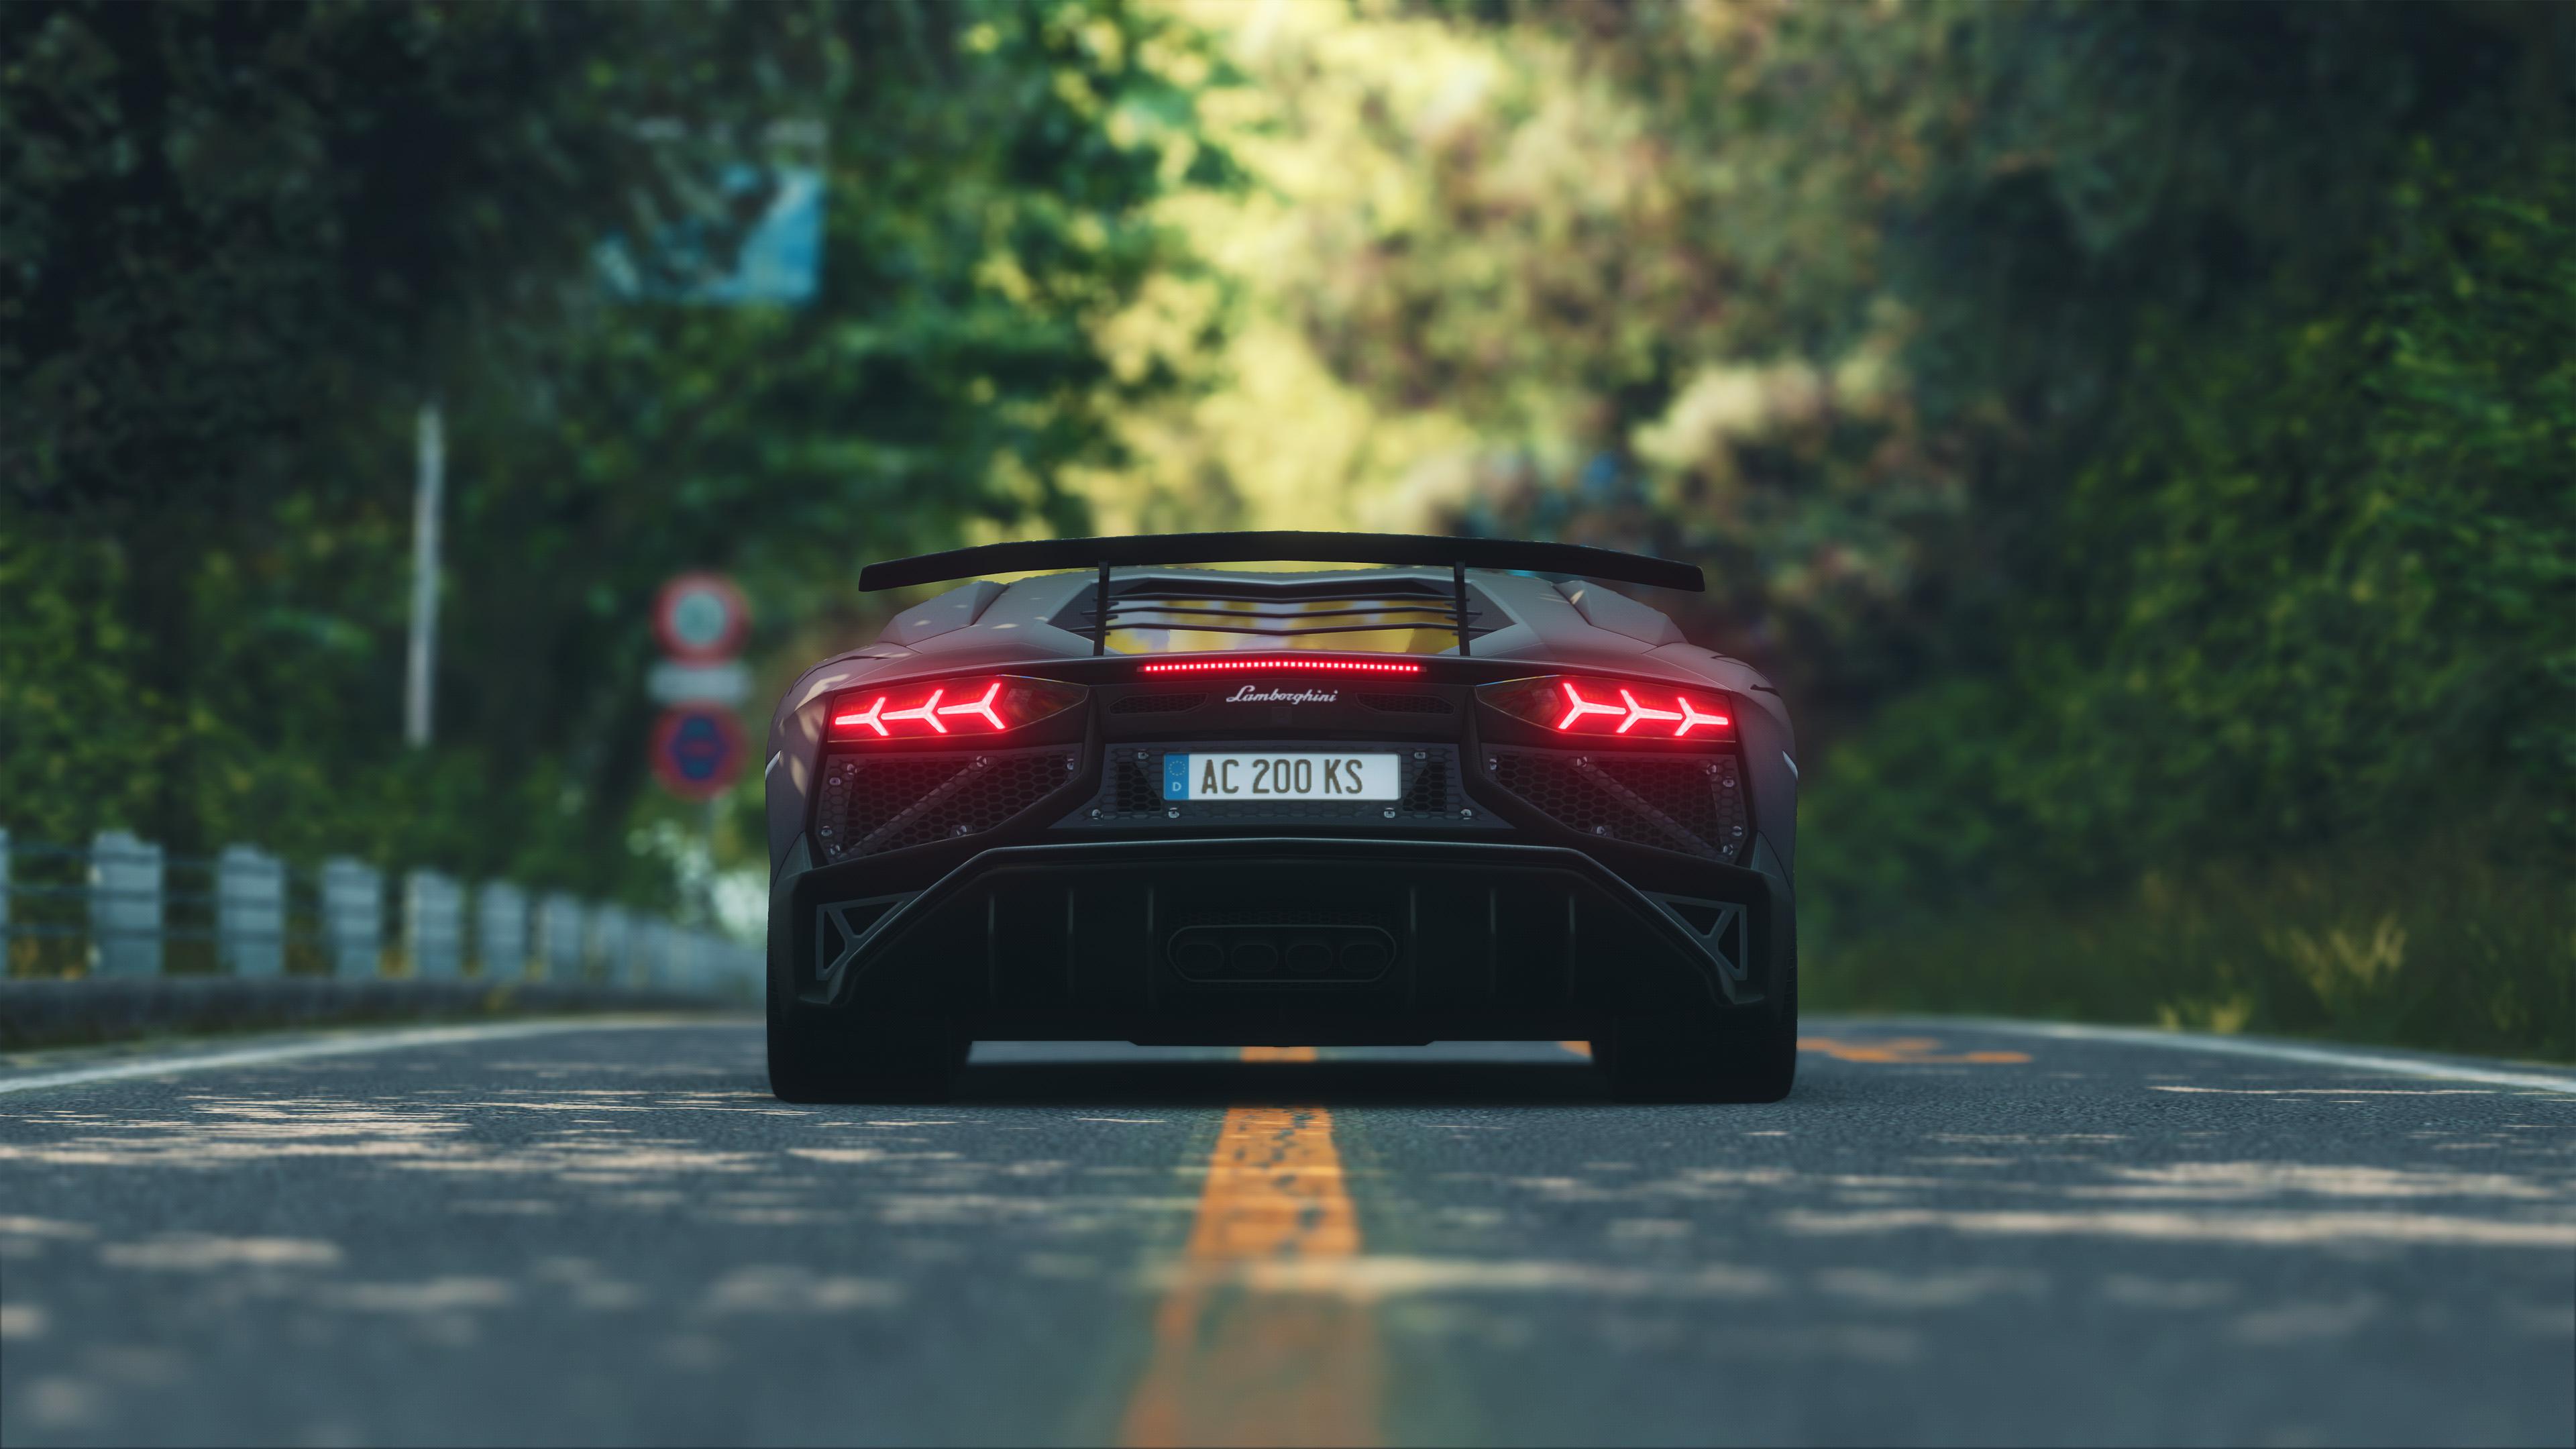 Lái xe Lamborghini là trải nghiệm tuyệt vời và giúp bạn tận hưởng cảm giác mạnh mẽ và đẳng cấp. Xem ảnh về chiếc siêu xe đầy sức hấp dẫn này để cảm nhận được sự khác biệt và đẳng cấp của Lamborghini.